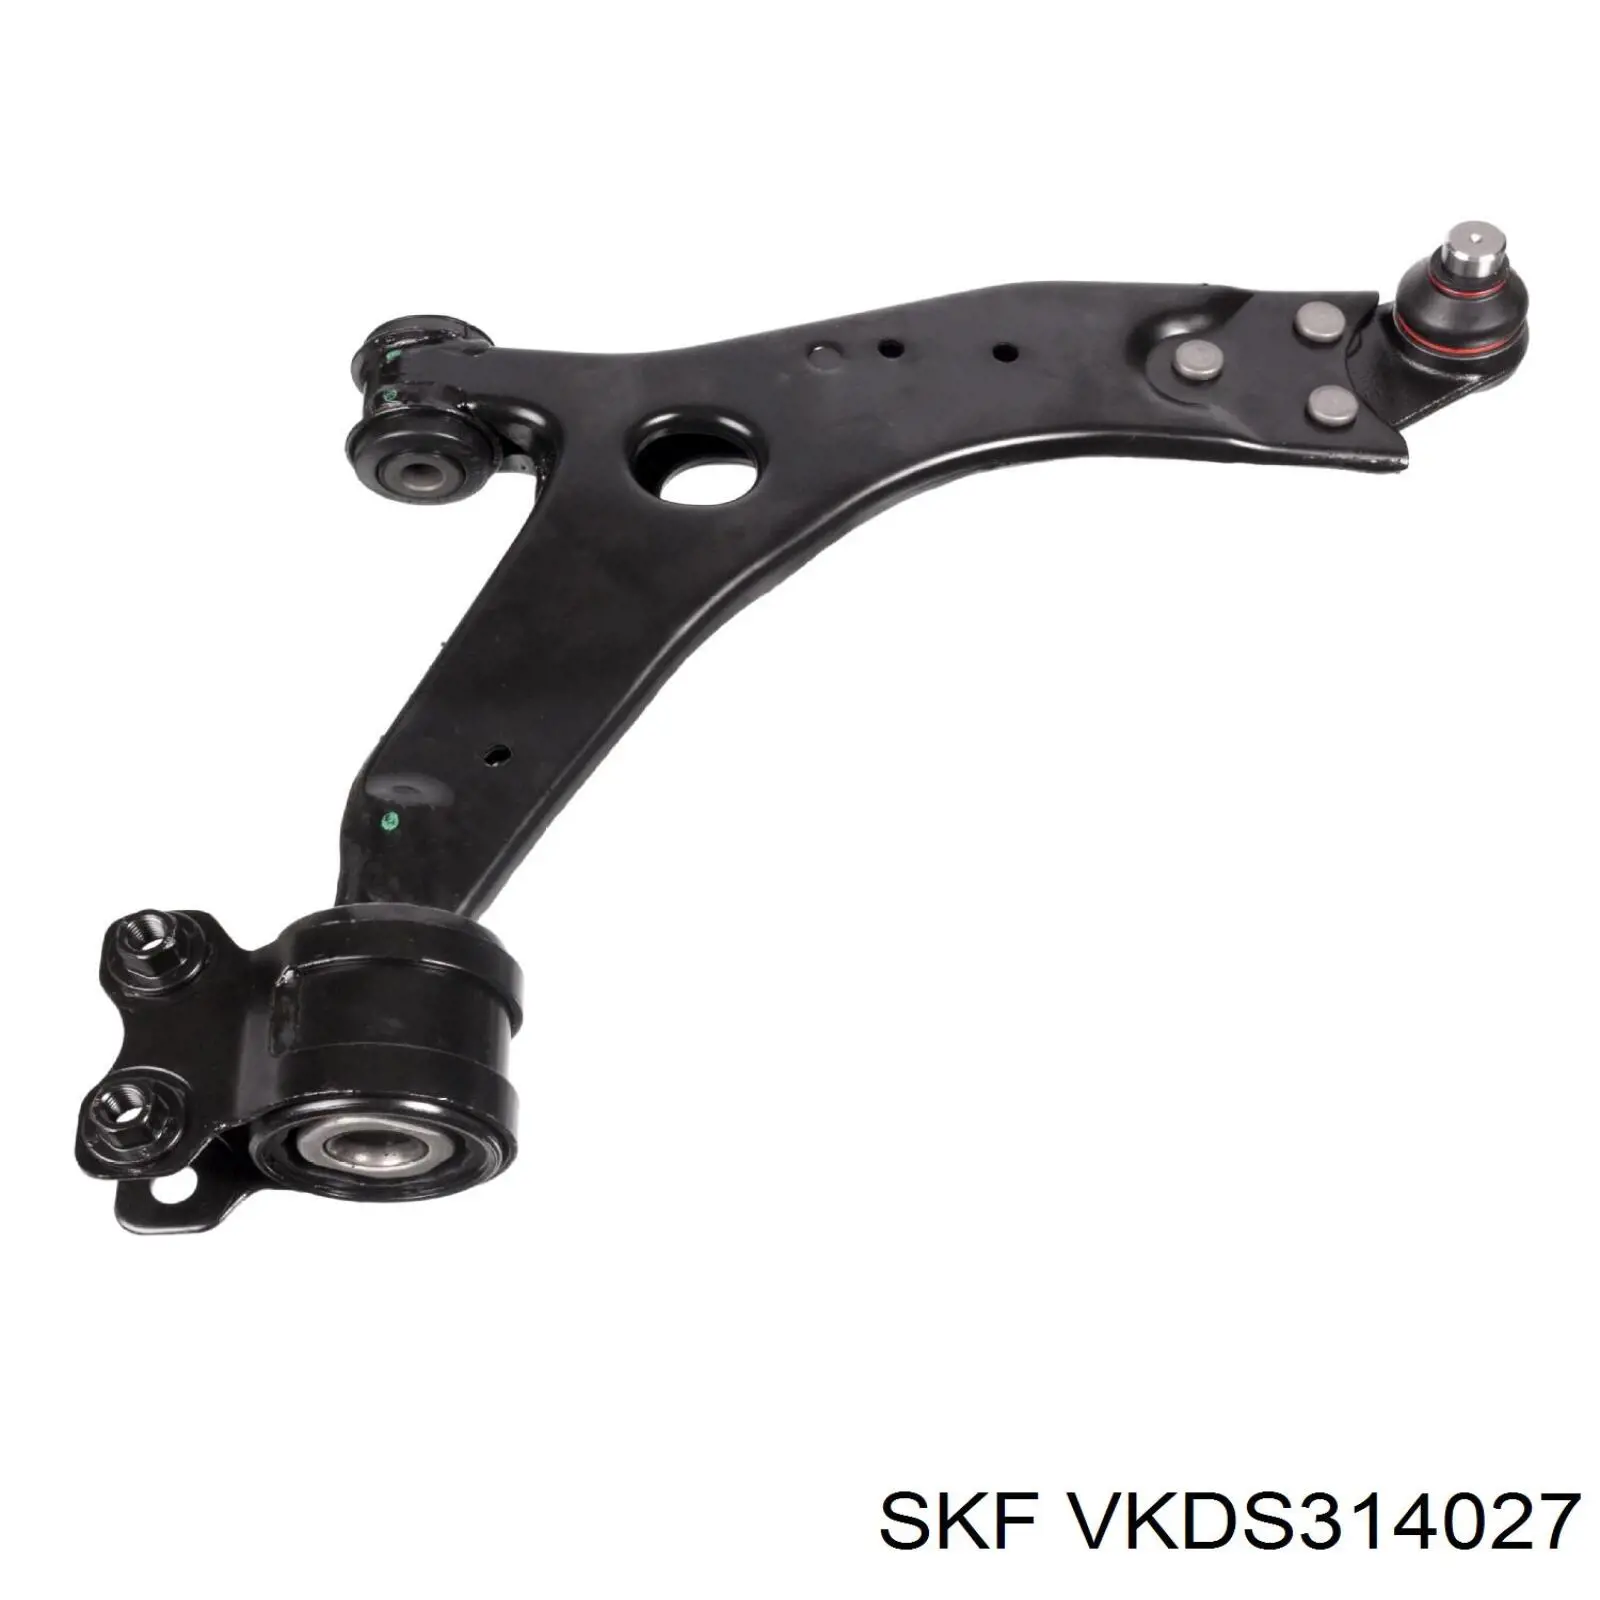 VKDS 314027 SKF rótula de suspensión inferior derecha